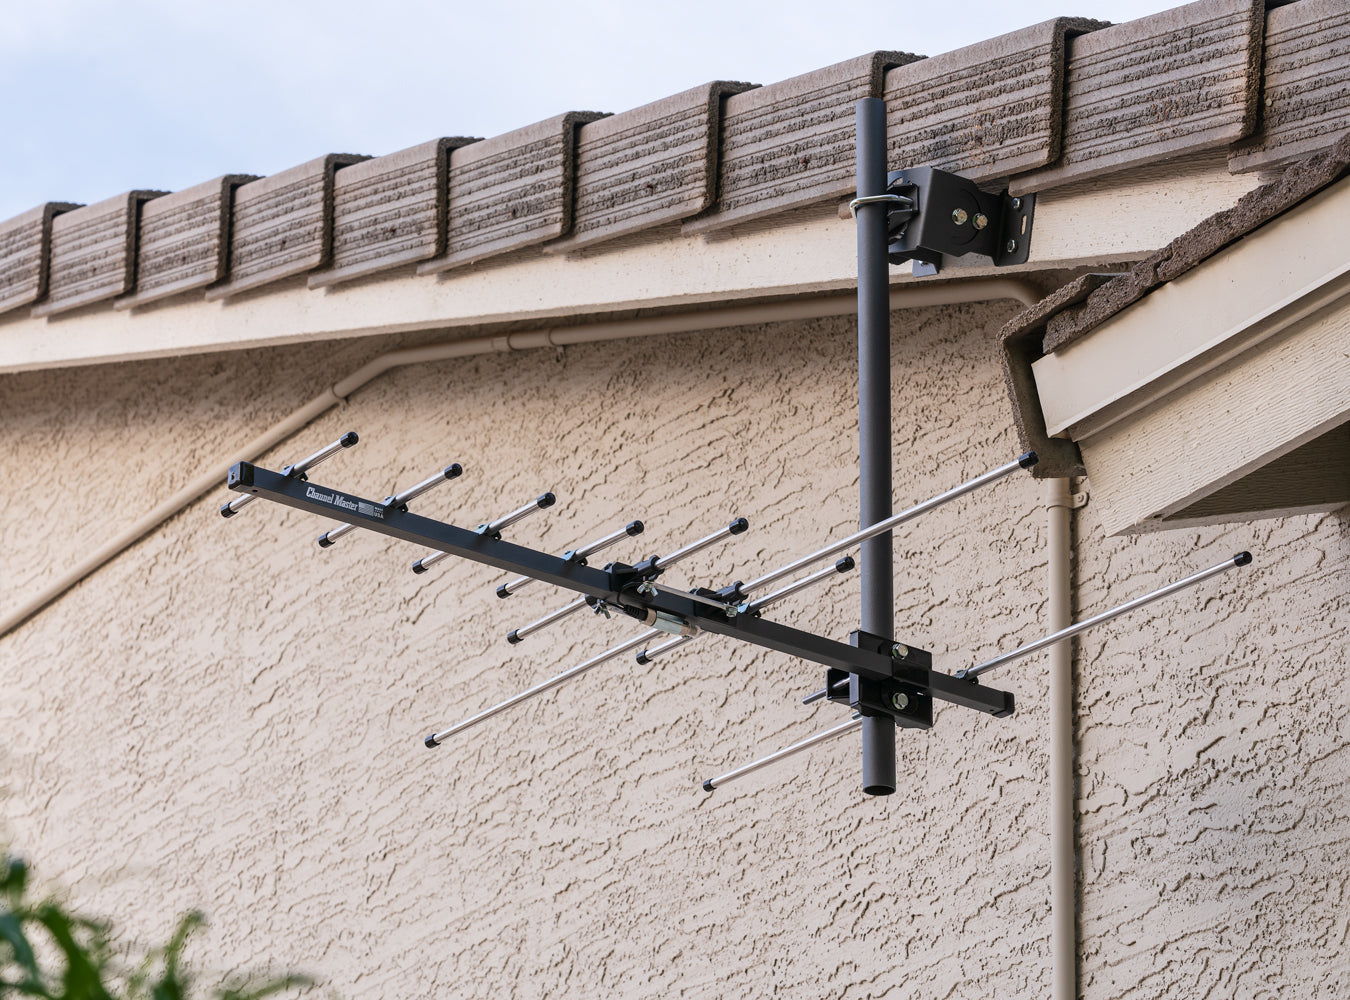 channel master antennas outdoor